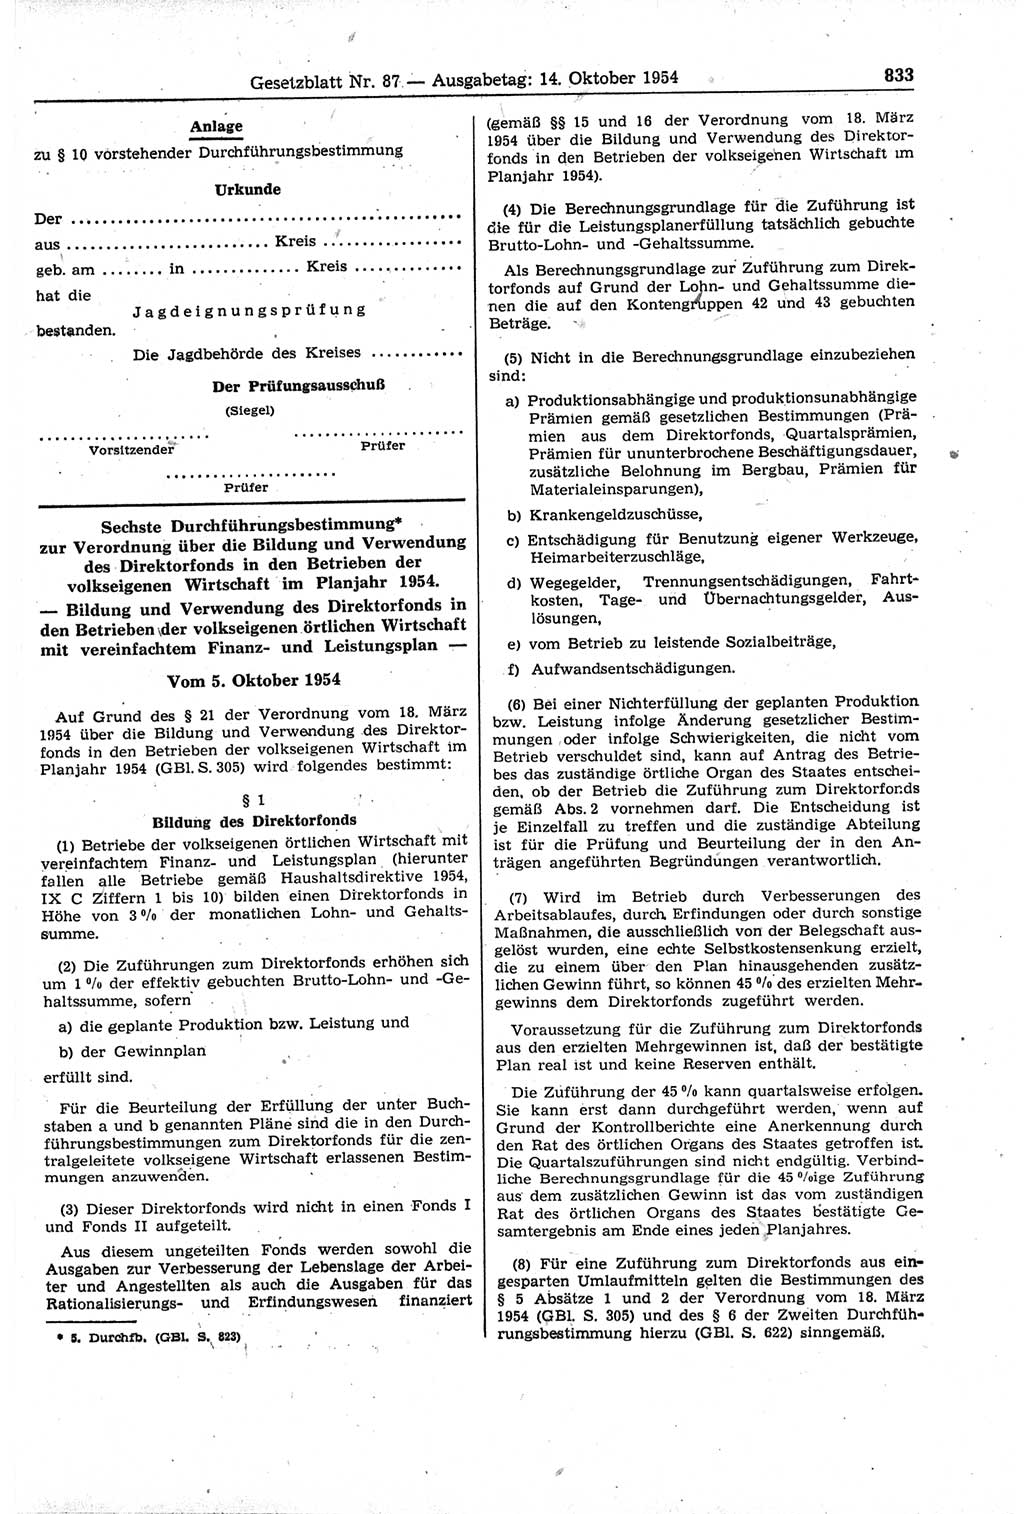 Gesetzblatt (GBl.) der Deutschen Demokratischen Republik (DDR) 1954, Seite 833 (GBl. DDR 1954, S. 833)